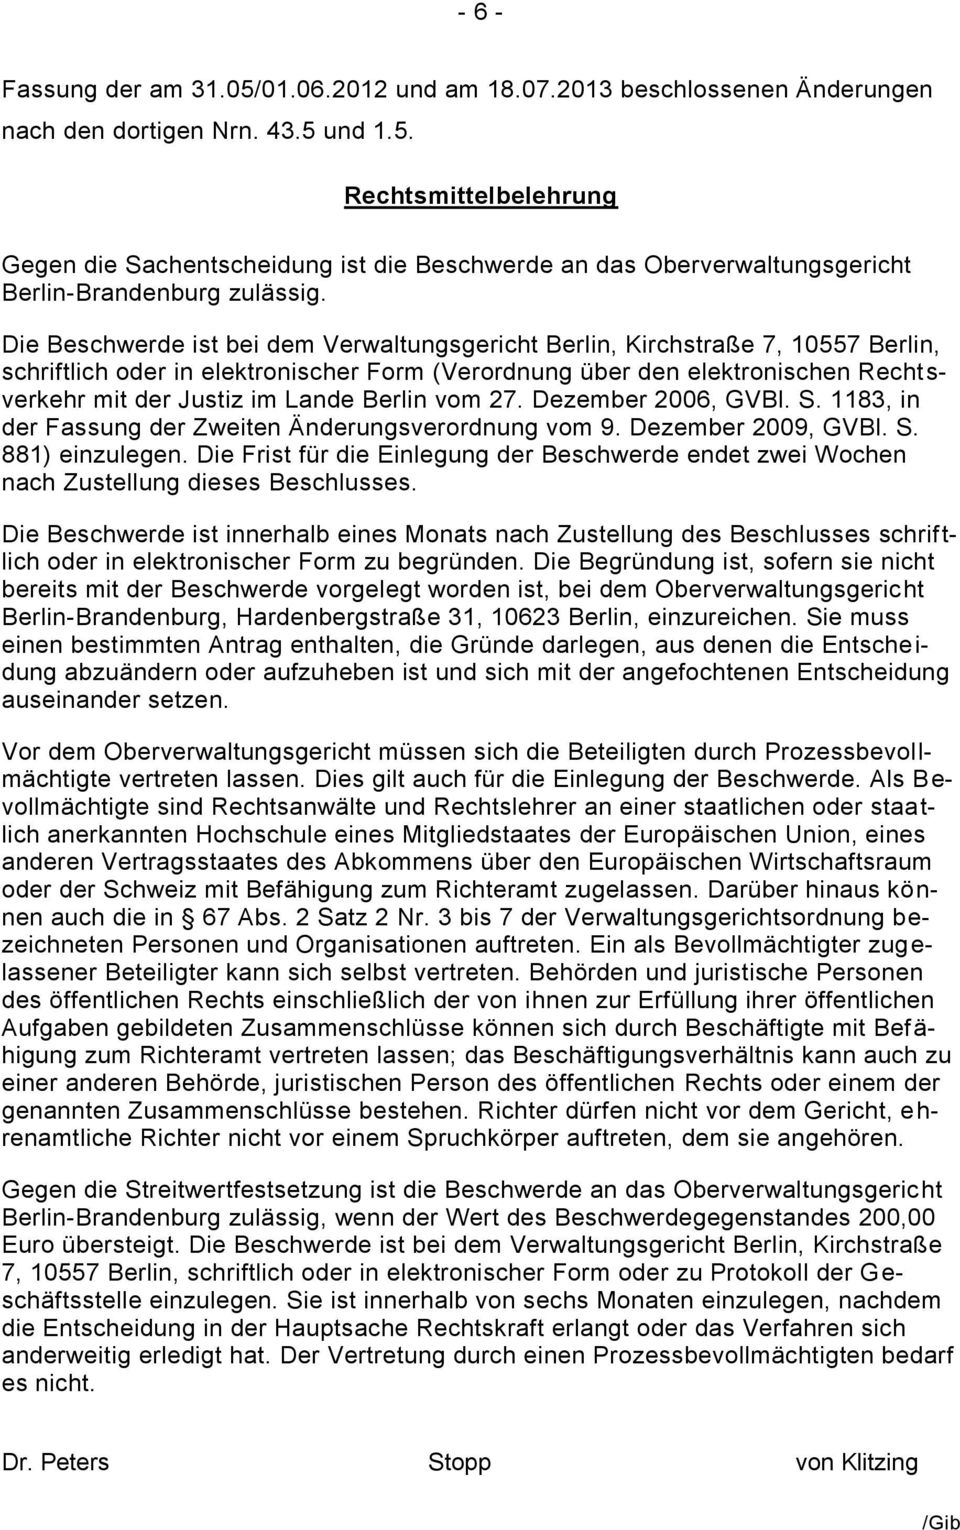 Berlin vom 27. Dezember 2006, GVBl. S. 1183, in der Fassung der Zweiten Änderungsverordnung vom 9. Dezember 2009, GVBl. S. 881) einzulegen.